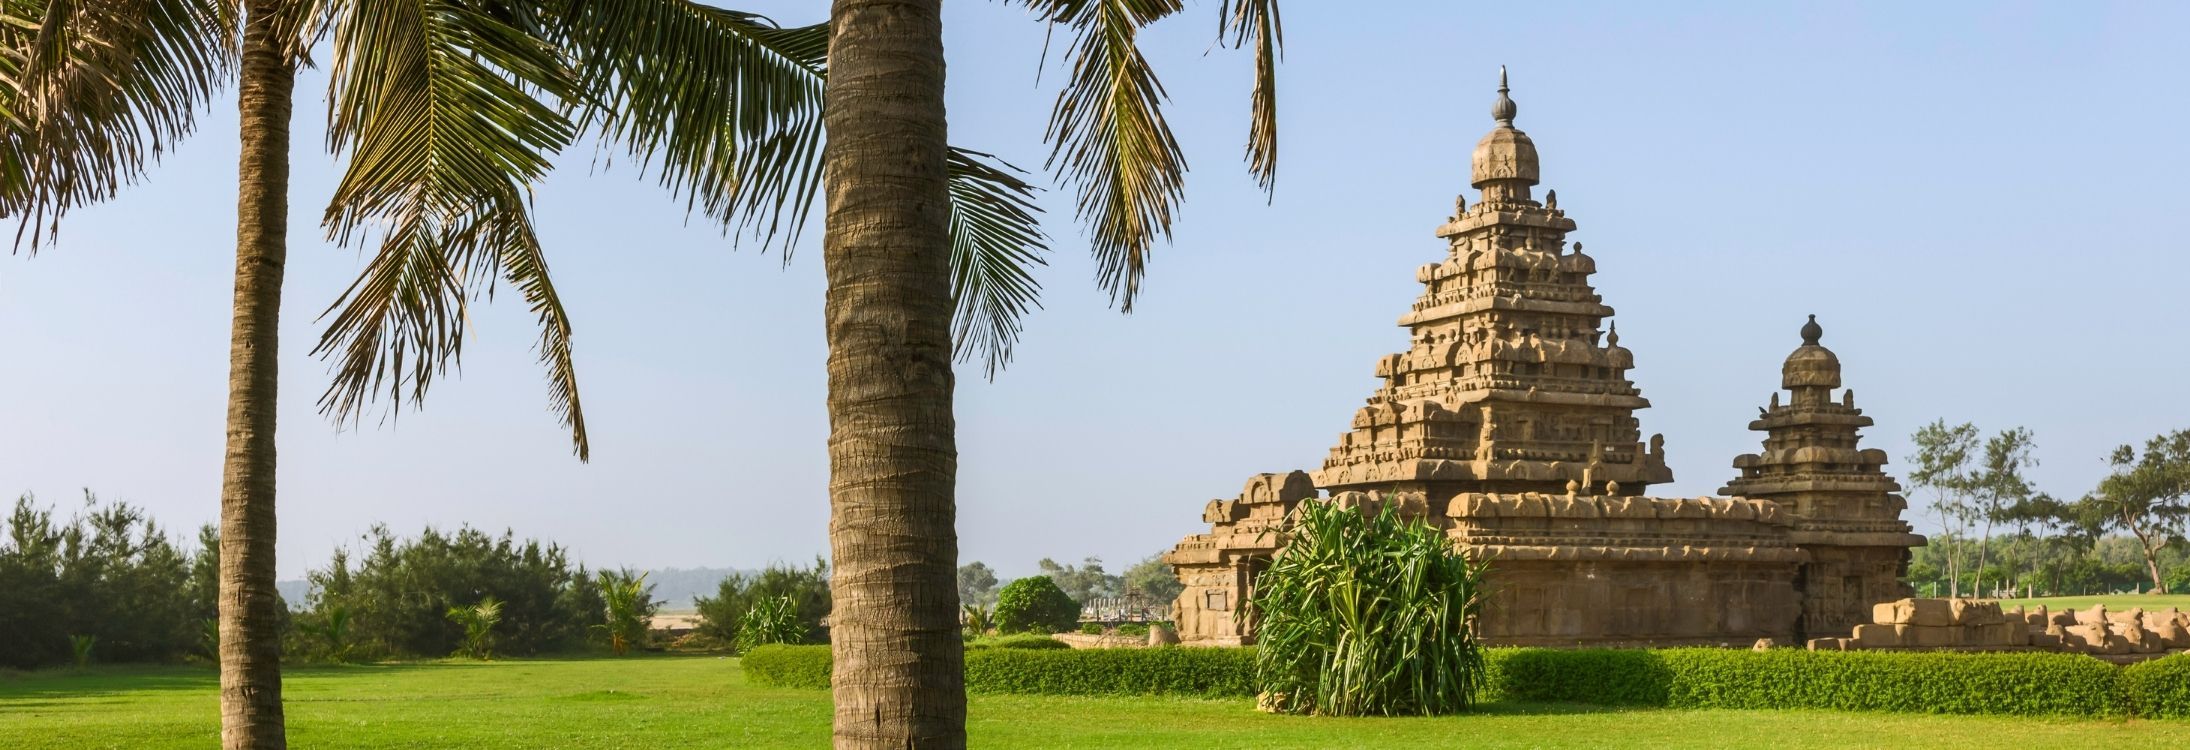 Mamallapuram Shore temple